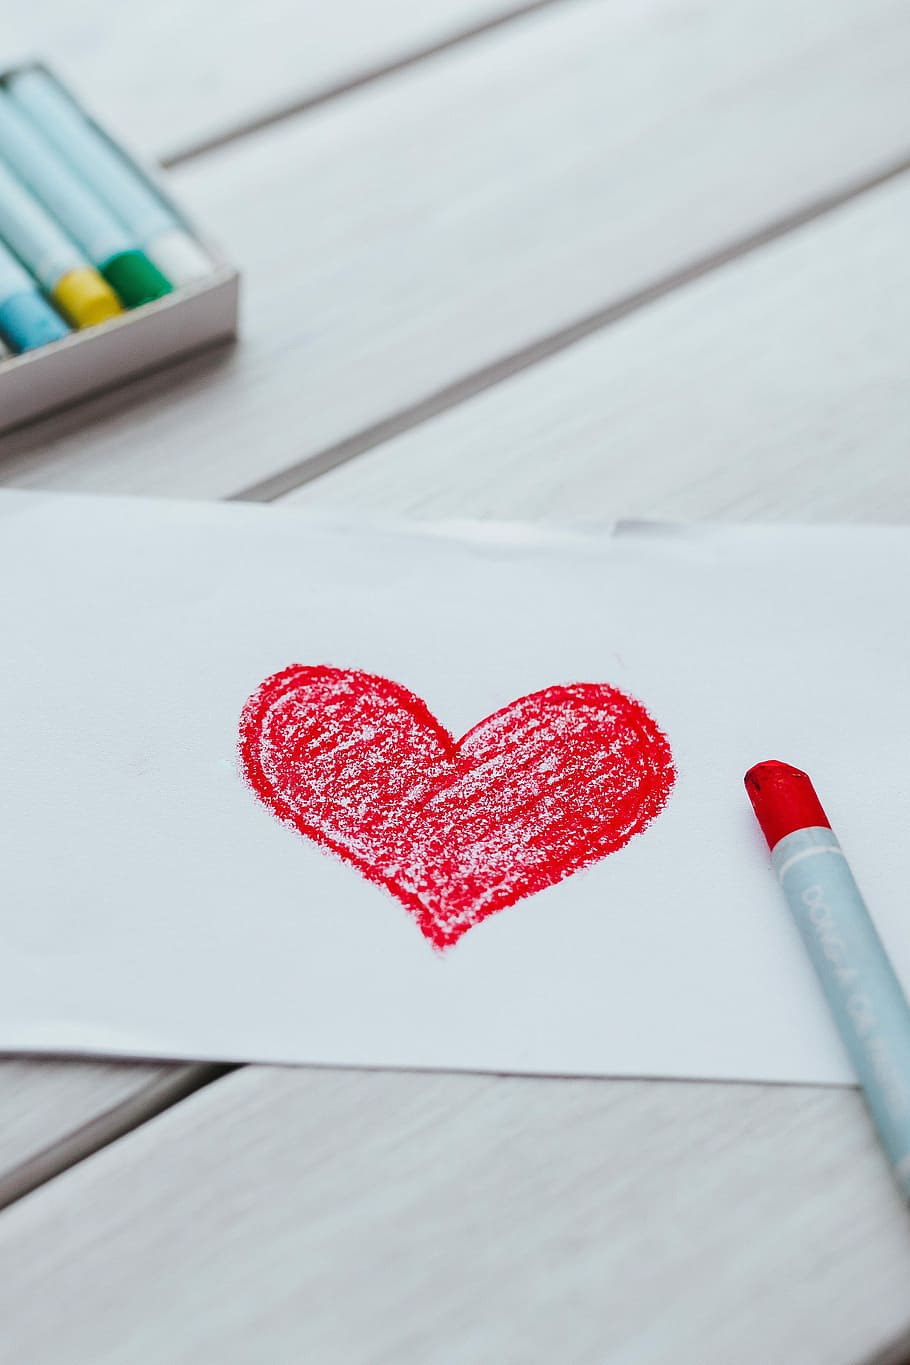 sedikit, menggambar, hati, seni, cinta, merah, krayon, valentine, kekasih, pensil